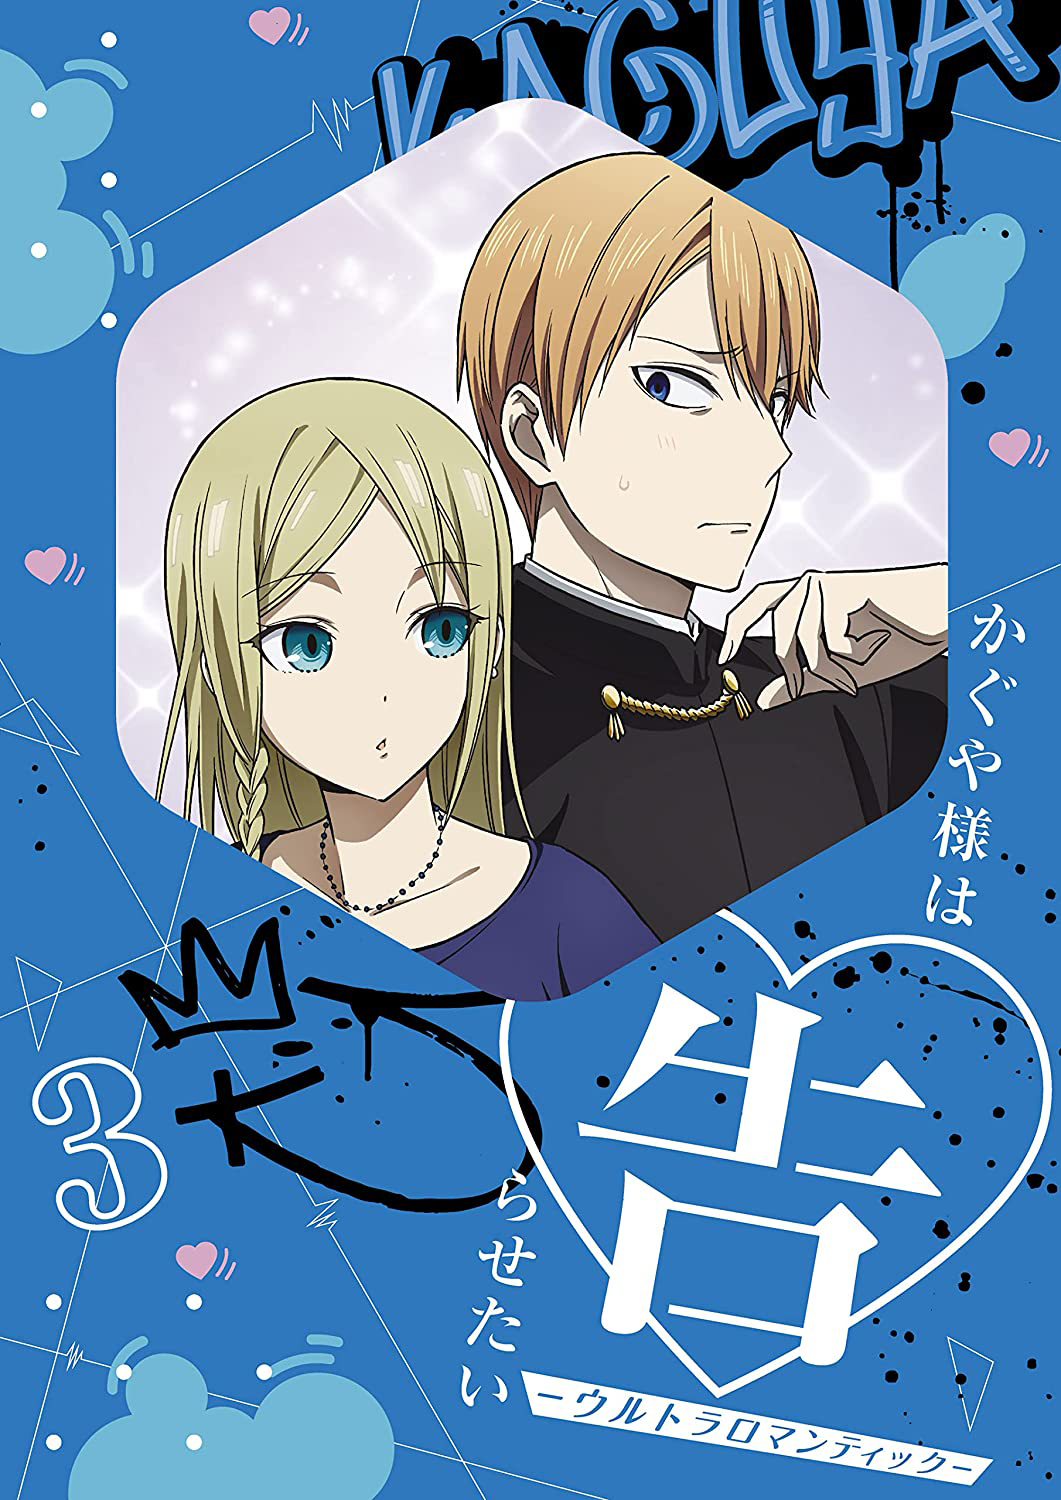 Kaguya-Sama: Love is War Manga Vol 5, 8, 11 Aka Akasaka ENGLISH